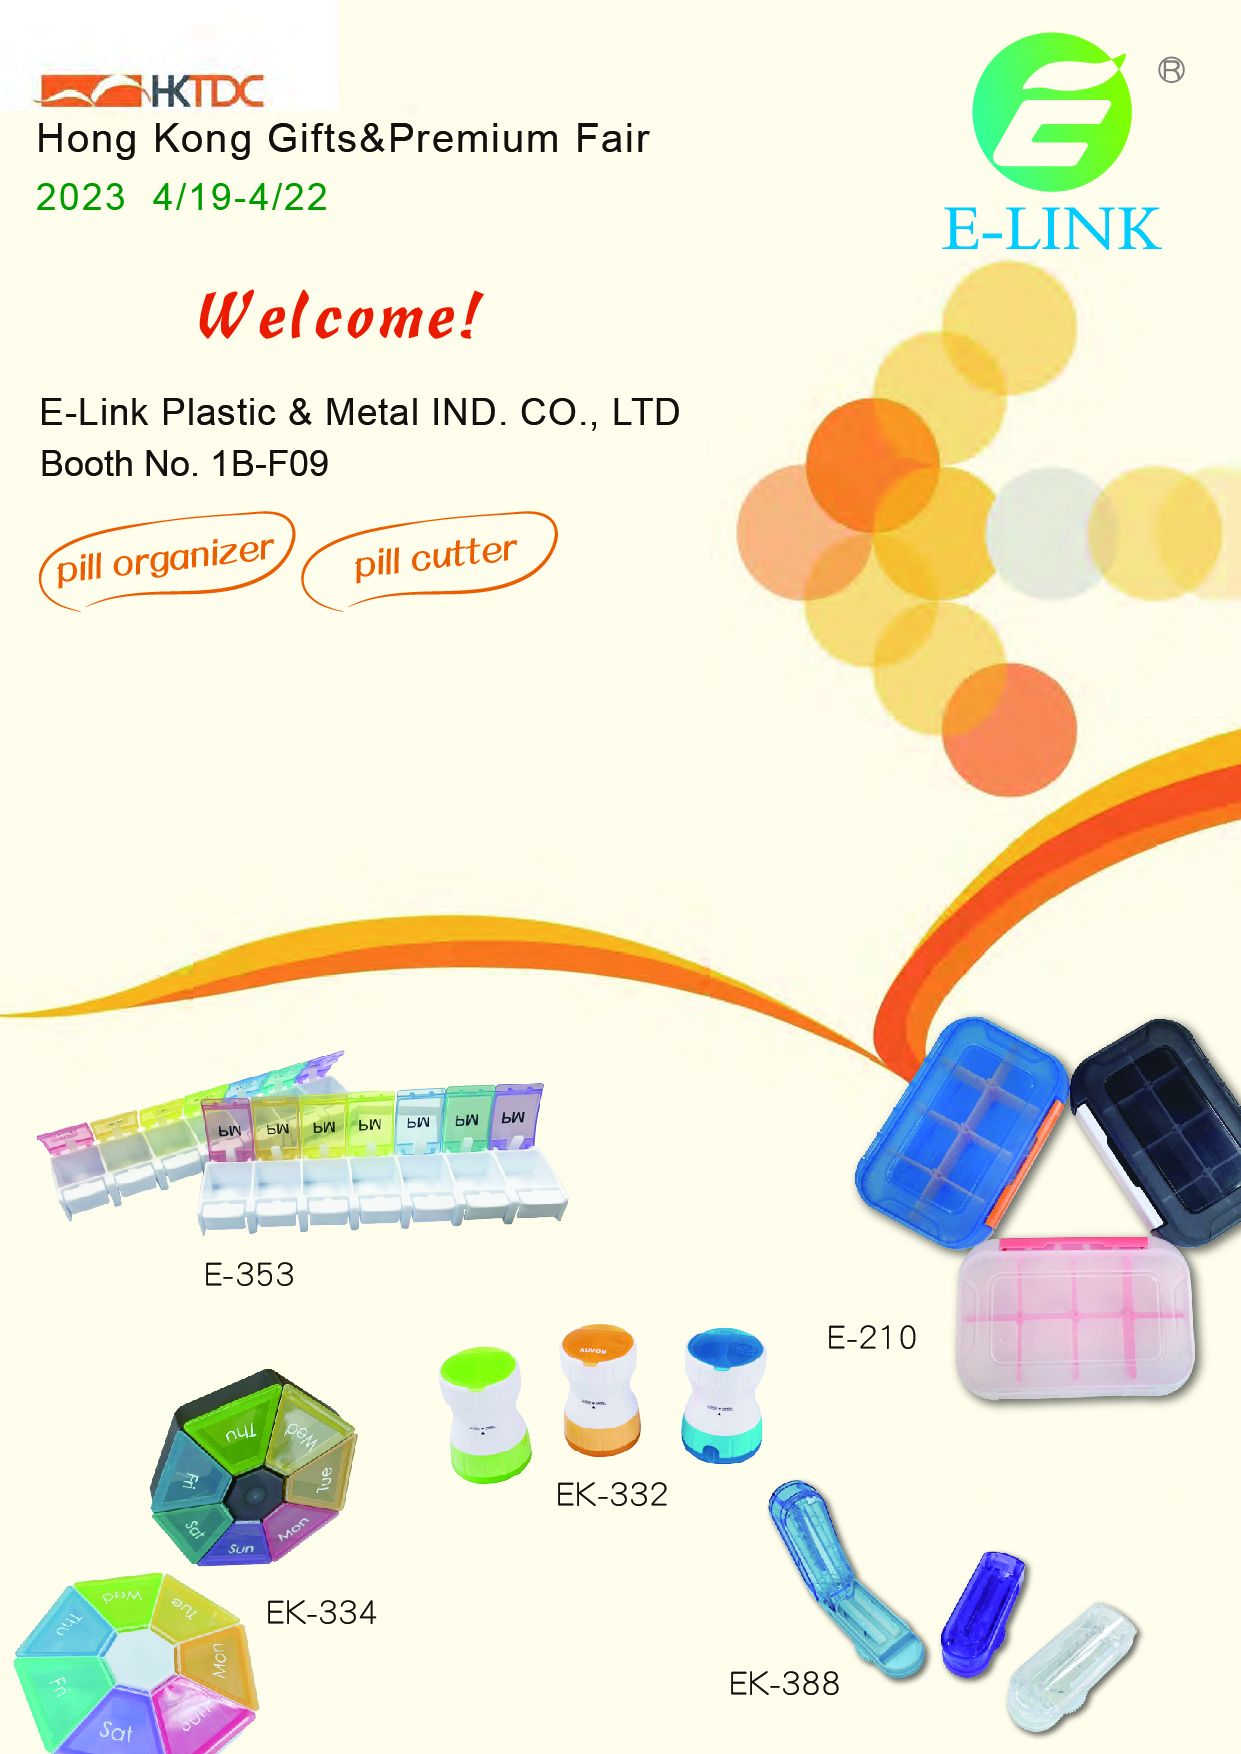 益麟企業會帶很多可愛藥盒與實用藥盒參加香港展